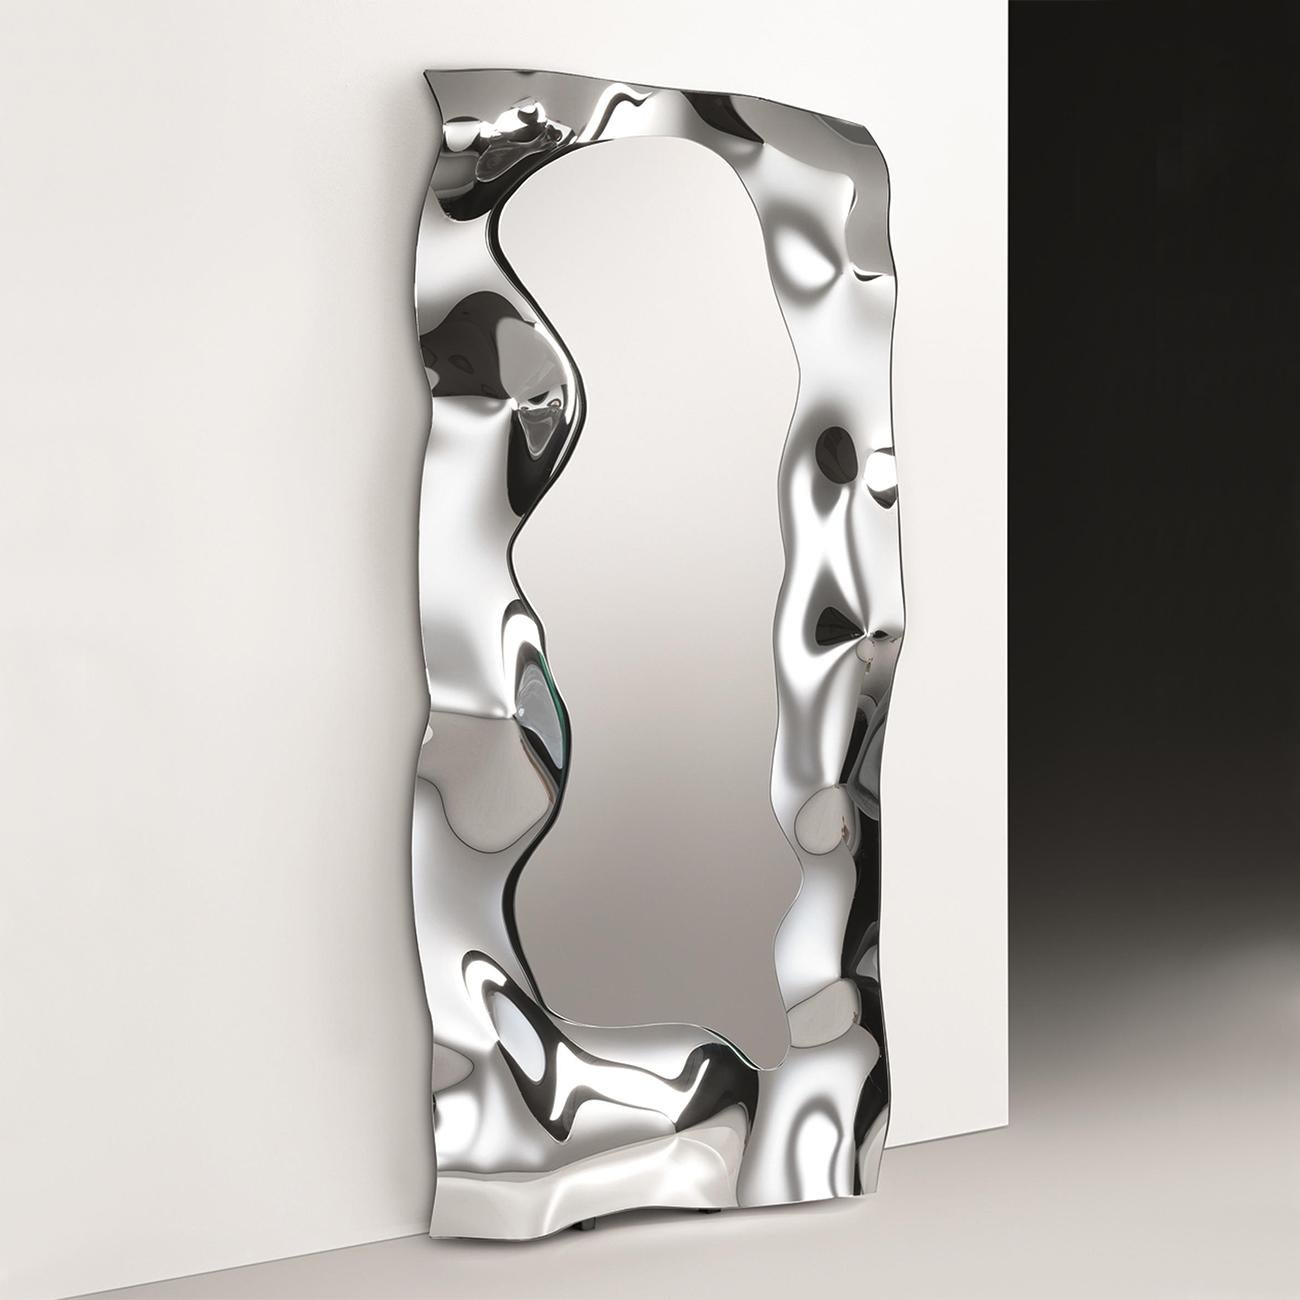 Spiegel, der voll in Hochtemperatur-Schmelzspiegelglas eingeschmolzen ist,
6 mm Dicke. Mit poliertem Metallrahmen. Spiegel zurück in
silberne Oberfläche.